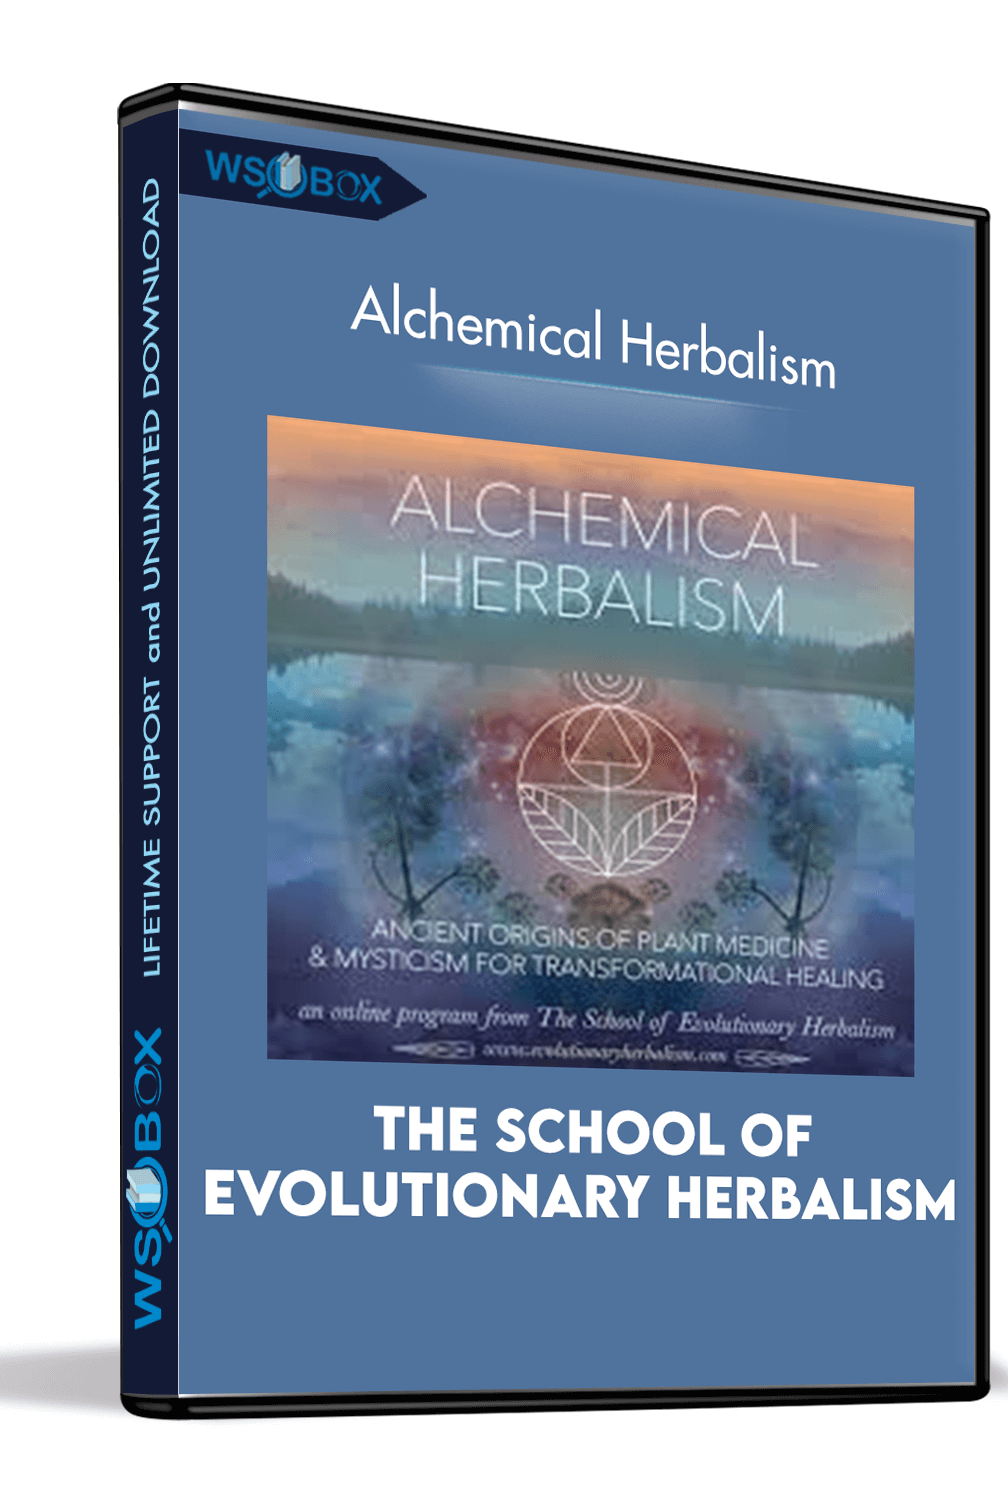 The School of Evolutionary Herbalism - Alchemical Herbalism.